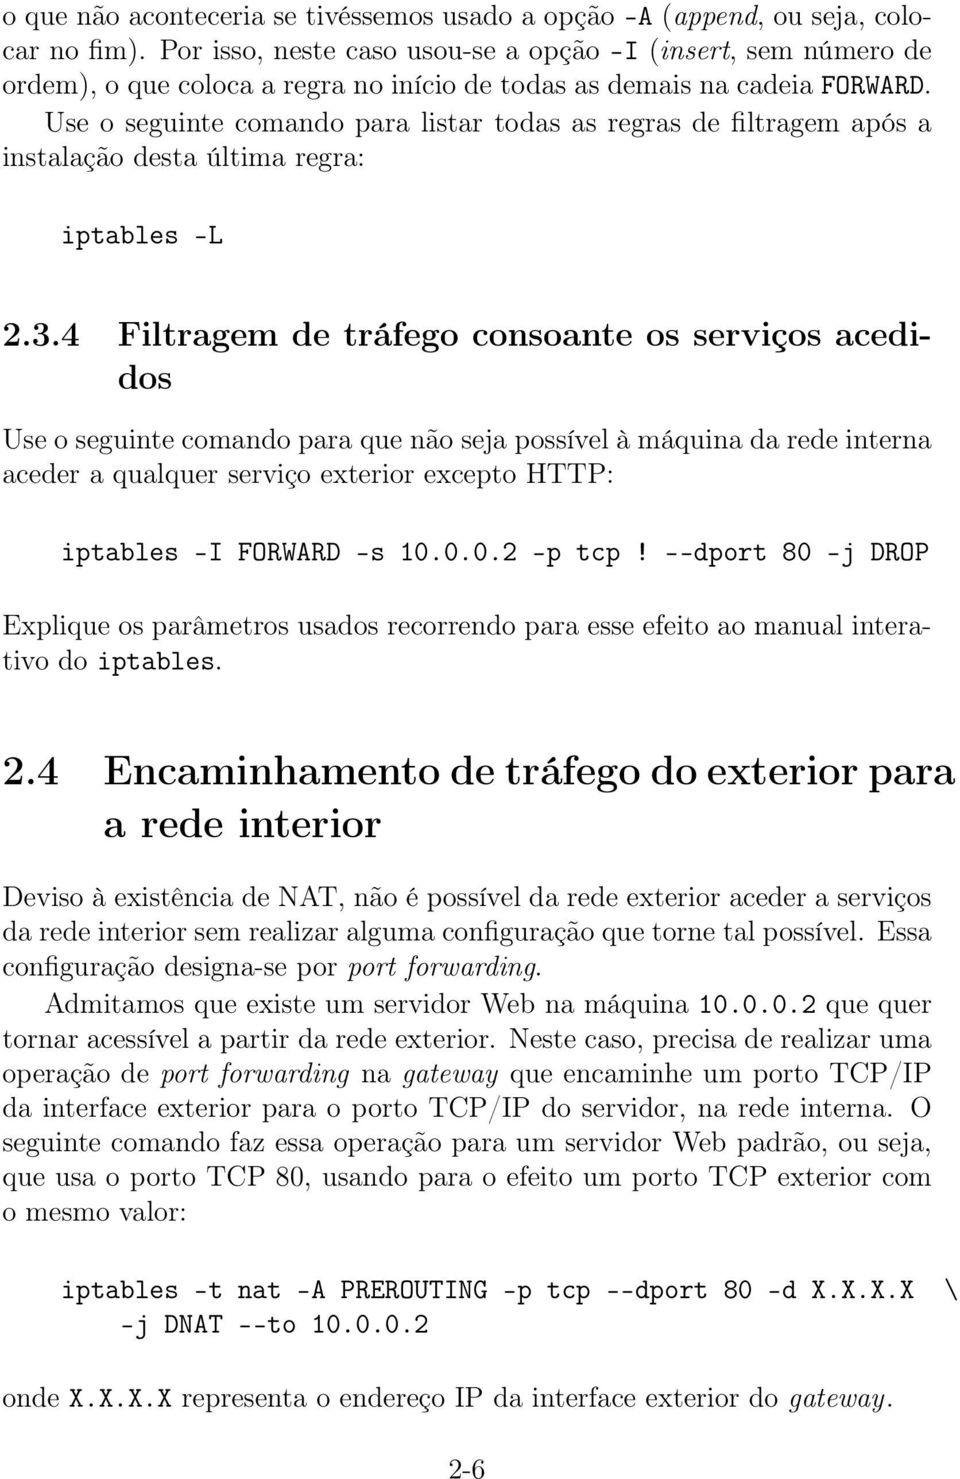 Use o seguinte comando para listar todas as regras de filtragem após a instalação desta última regra: iptables -L 2.3.